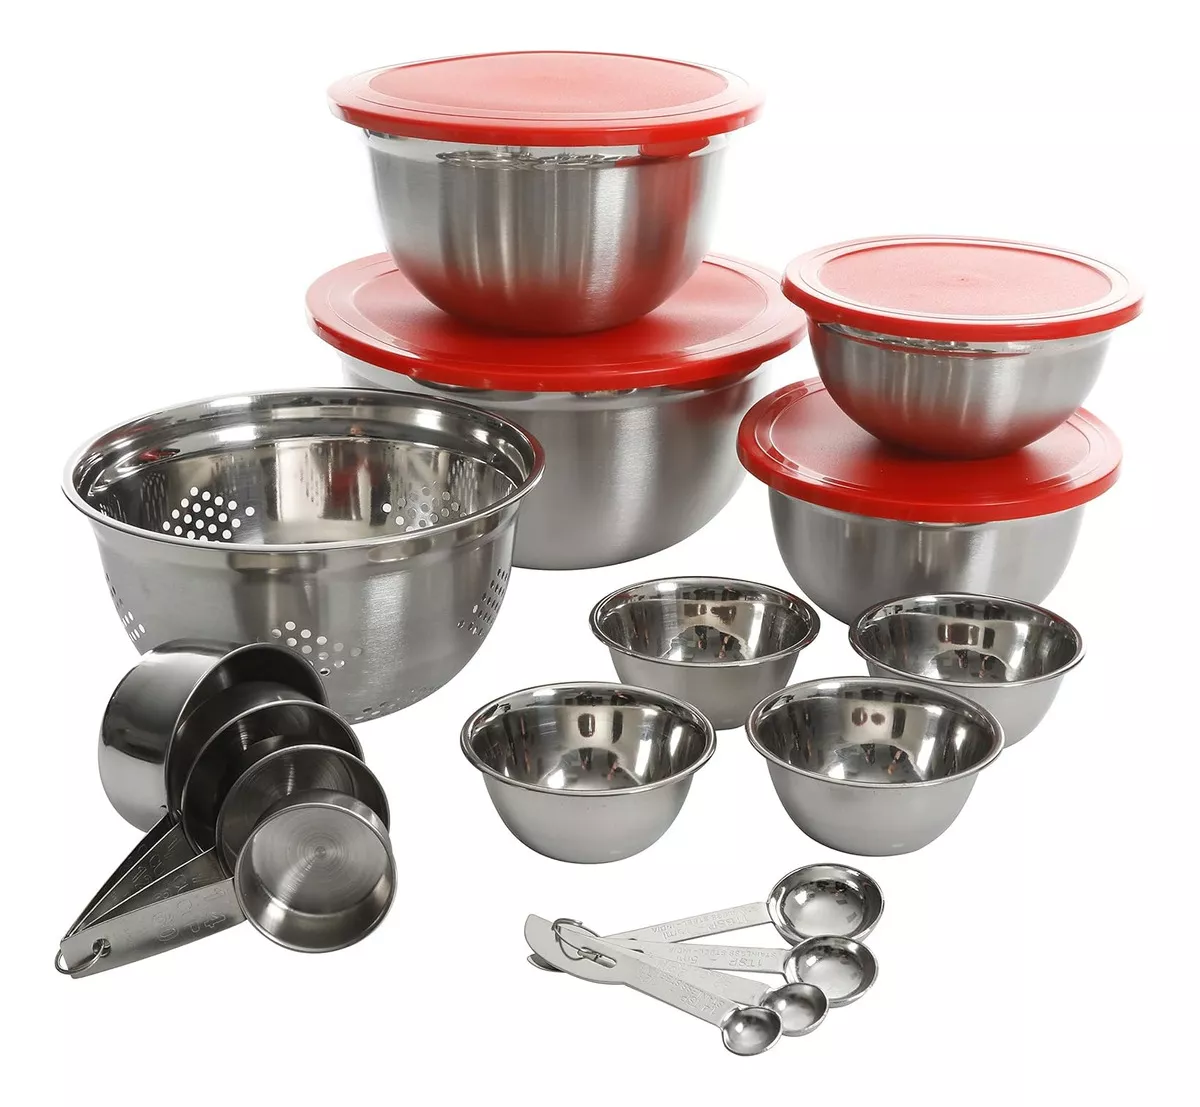 Tercera imagen para búsqueda de bowls cocina